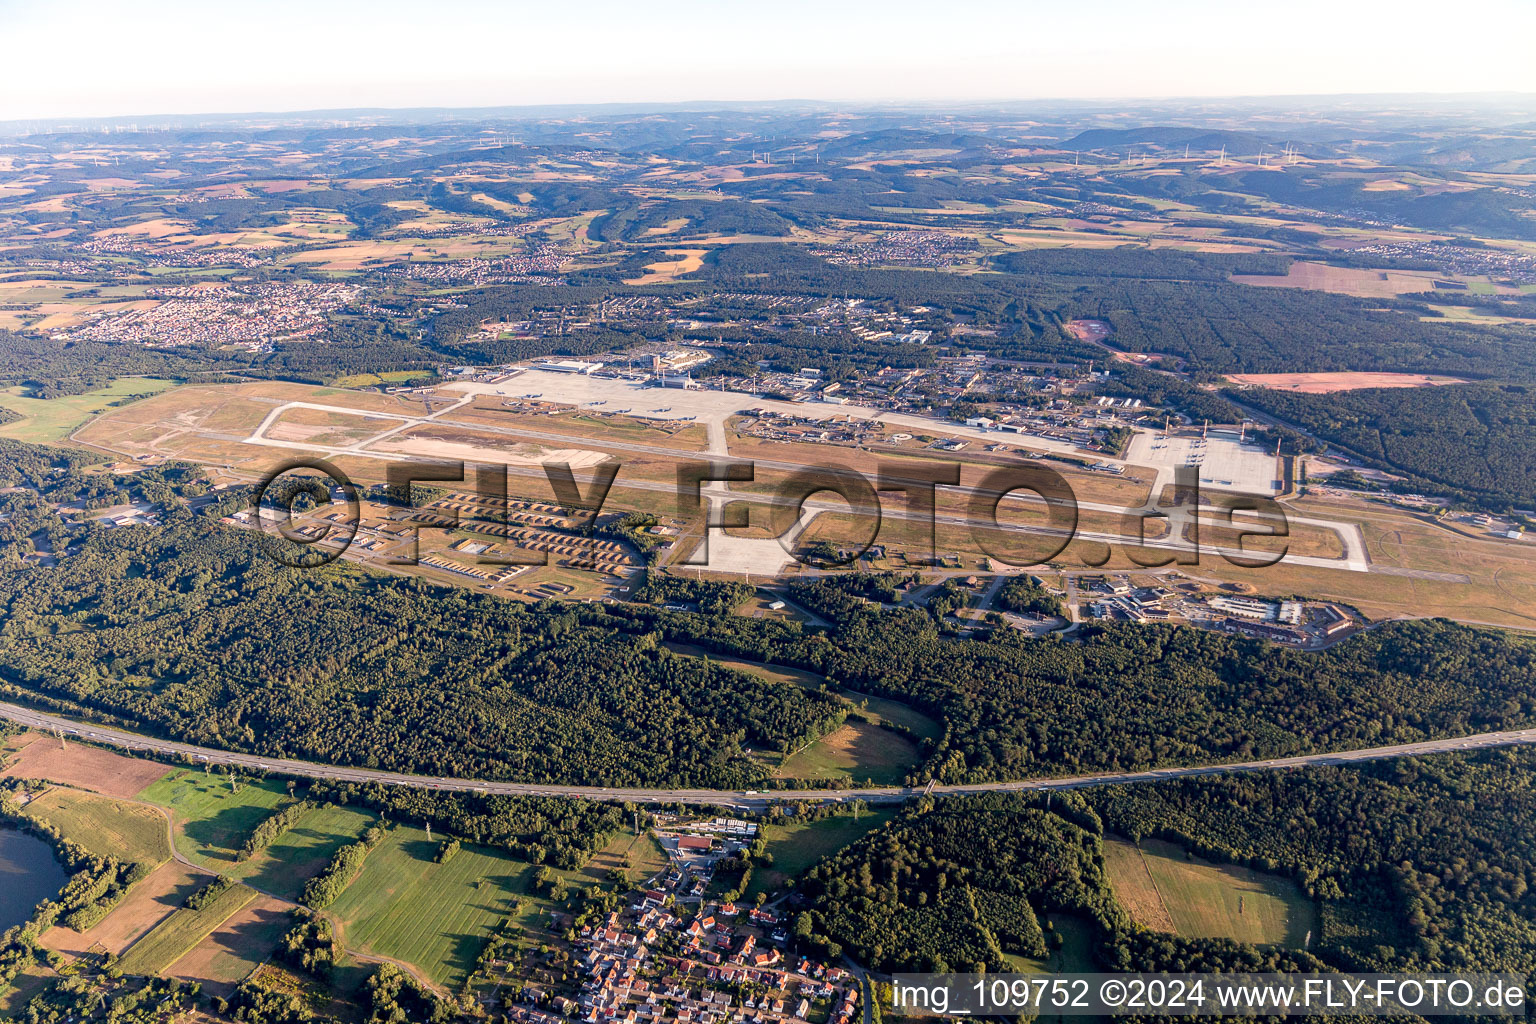 Vue aérienne de Pistes avec voies de circulation, hangars et terminaux sur le terrain de l'aéroport de l'US Air Force Ramstein Air Base-Miesenbach à Ramstein dans le département Rhénanie-Palatinat, Allemagne